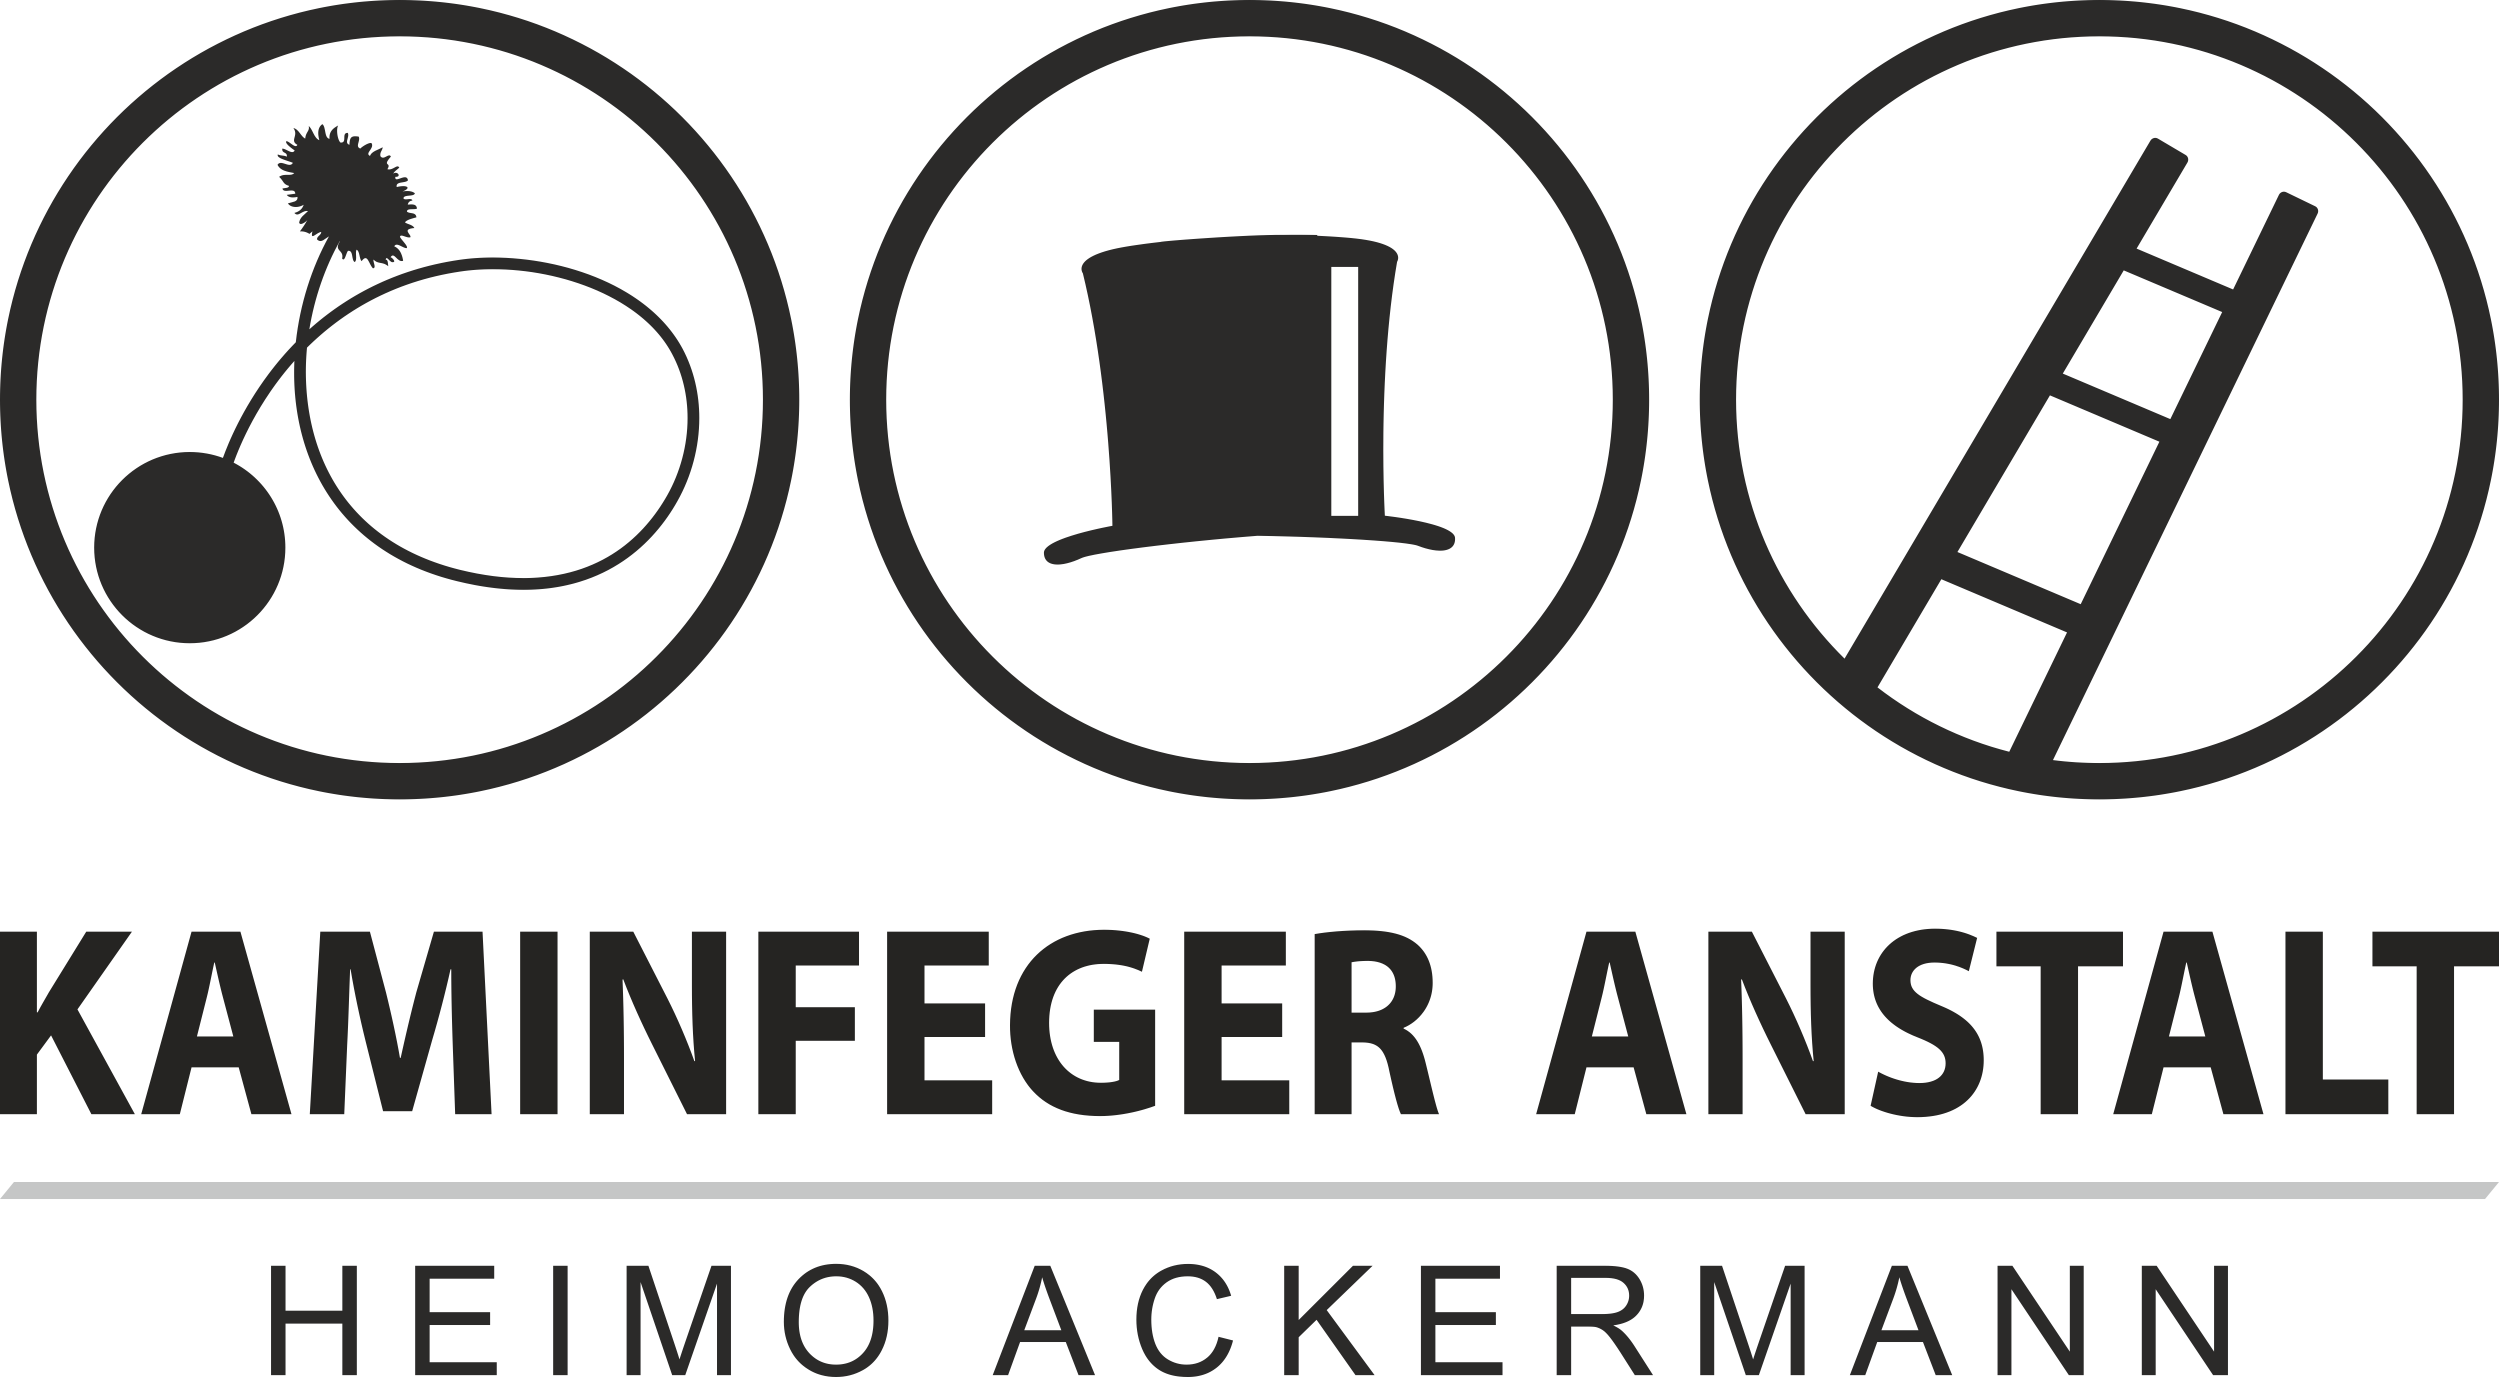 Heimo Ackermann Kaminfeger Anstalt